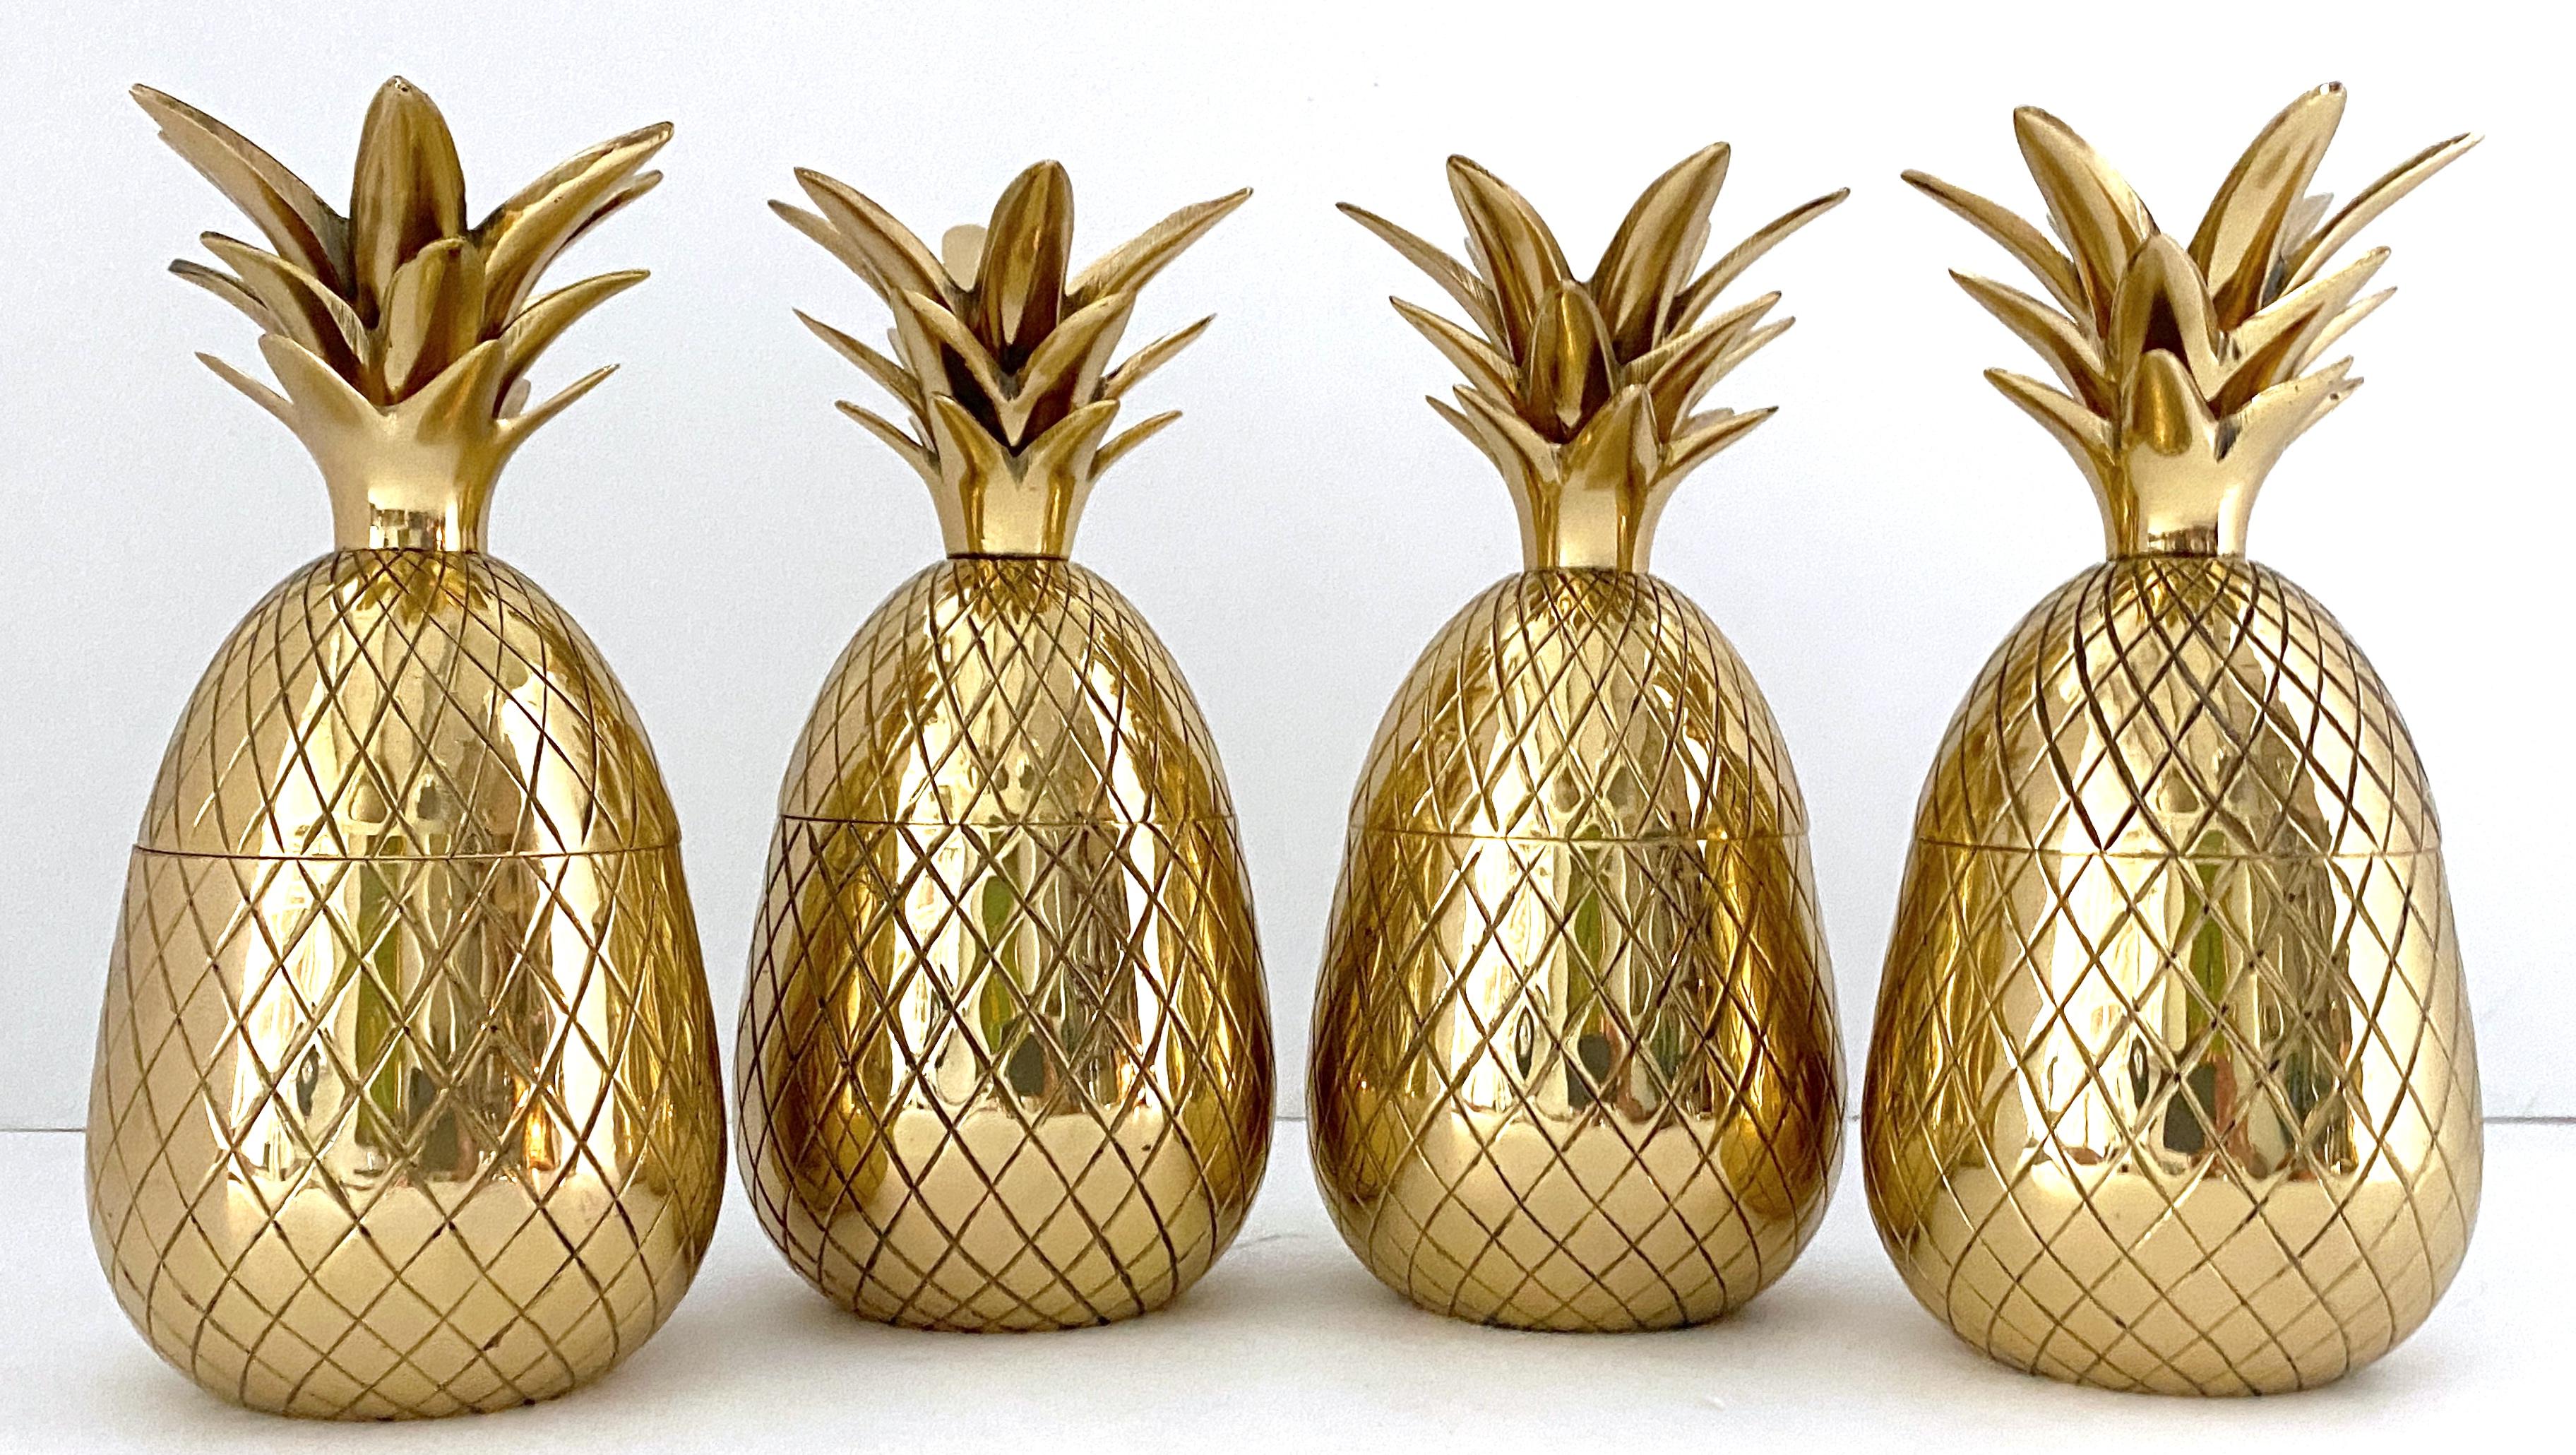 Cast Sarreid Brass 12-Light Pineapple Candelabra Centerpiece -'Surtout de Table' For Sale